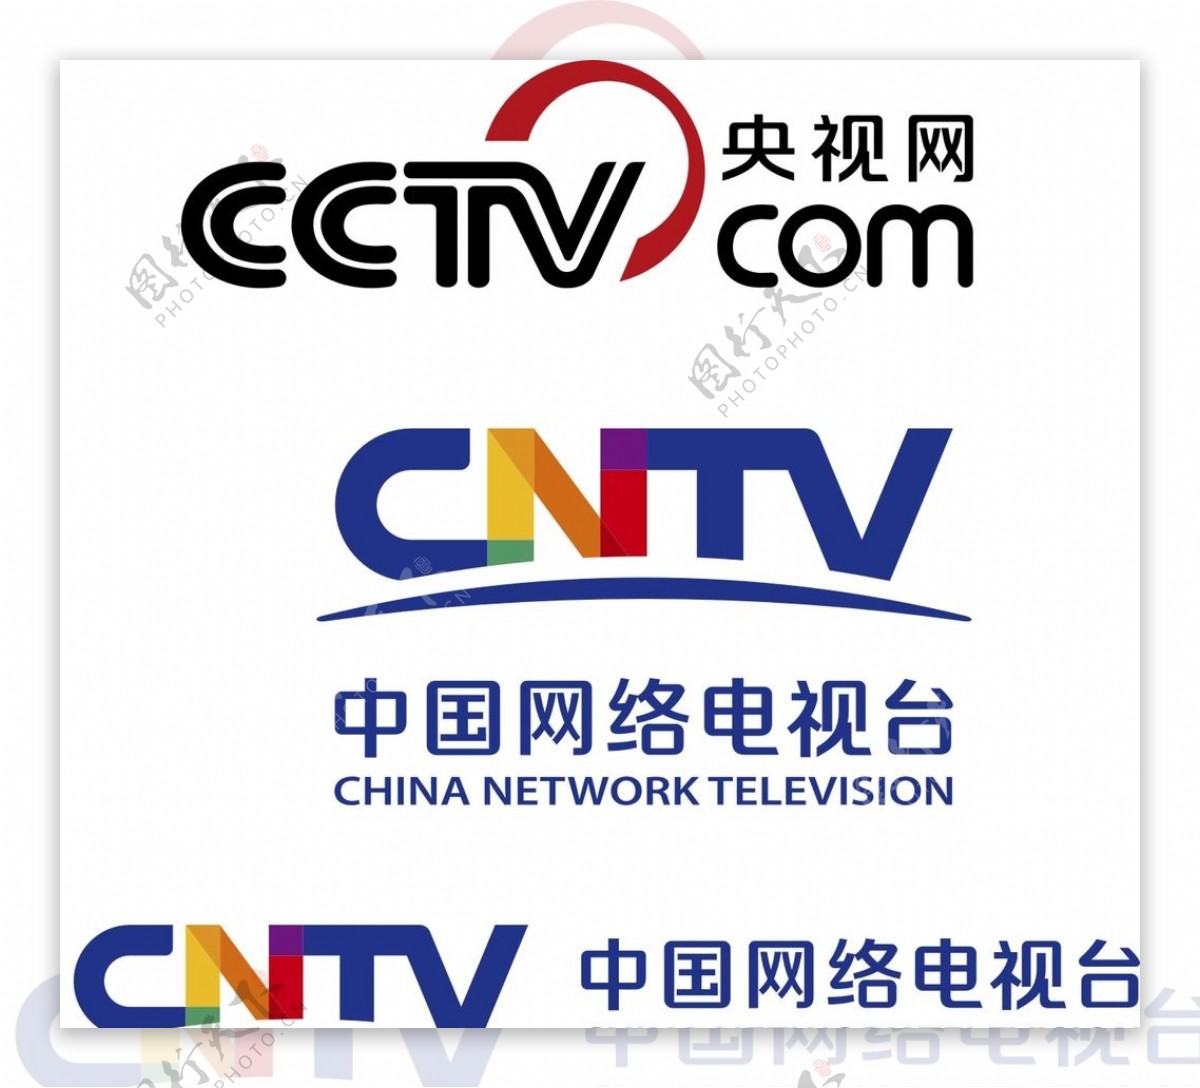 中国网络电视台央视网